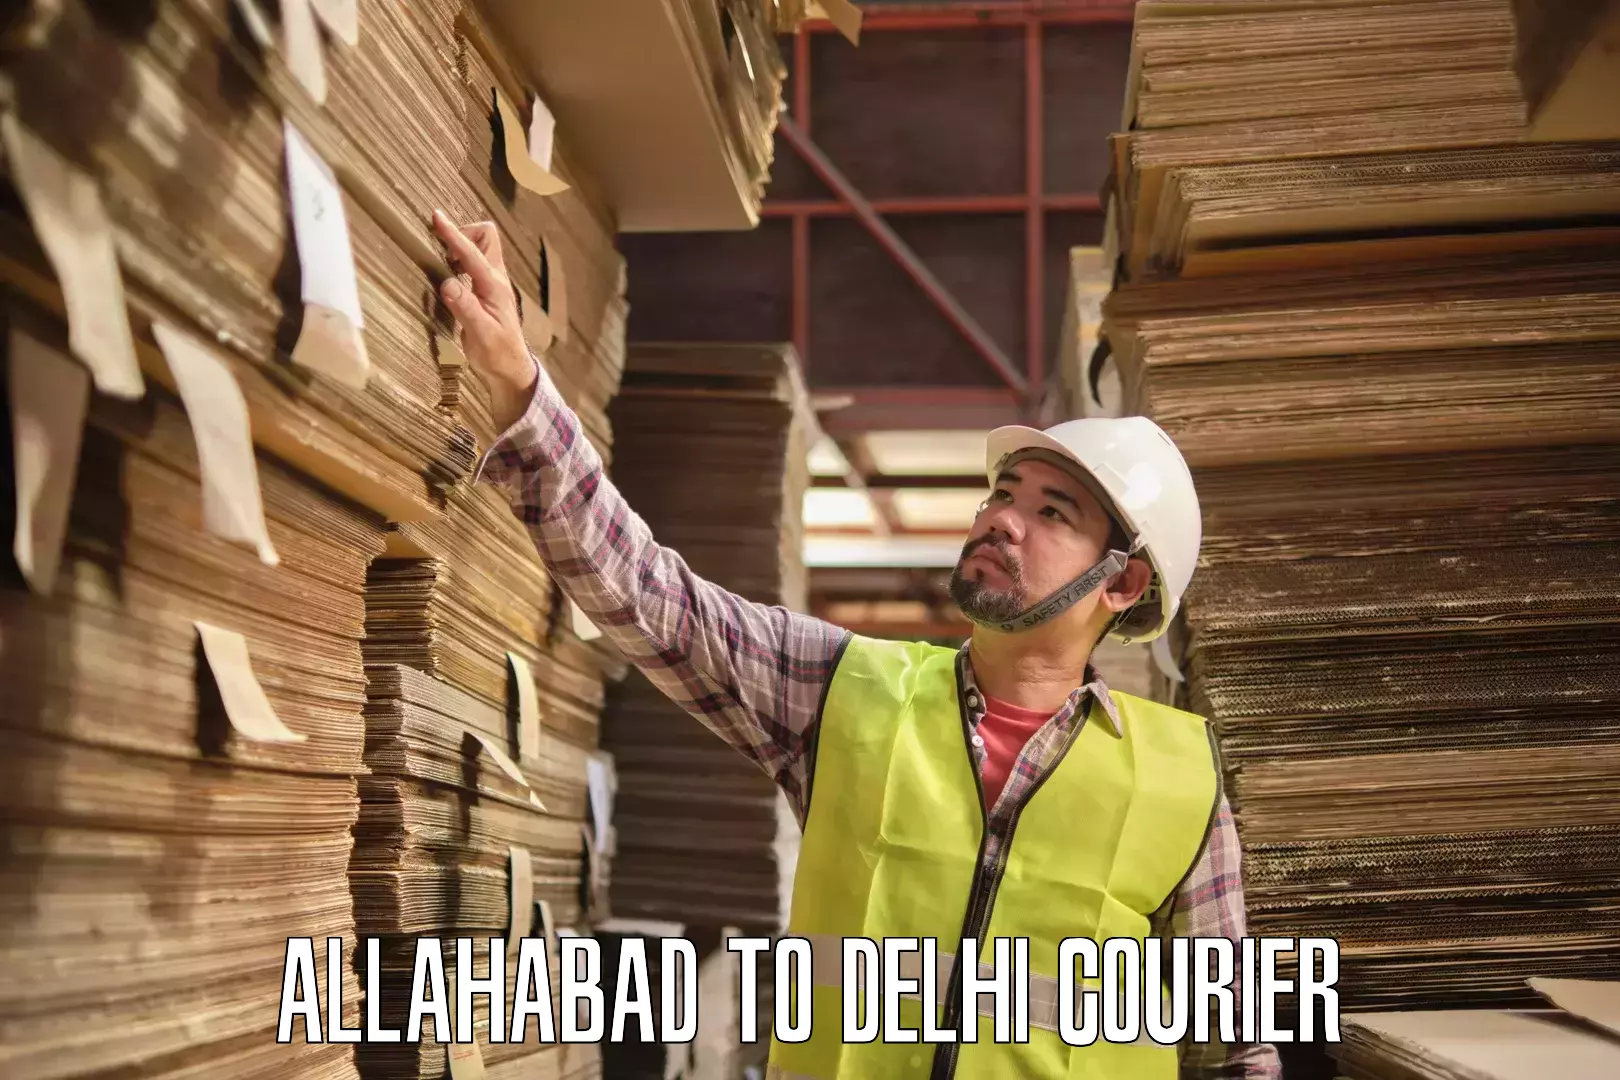 Track and trace shipping Allahabad to Jamia Millia Islamia New Delhi